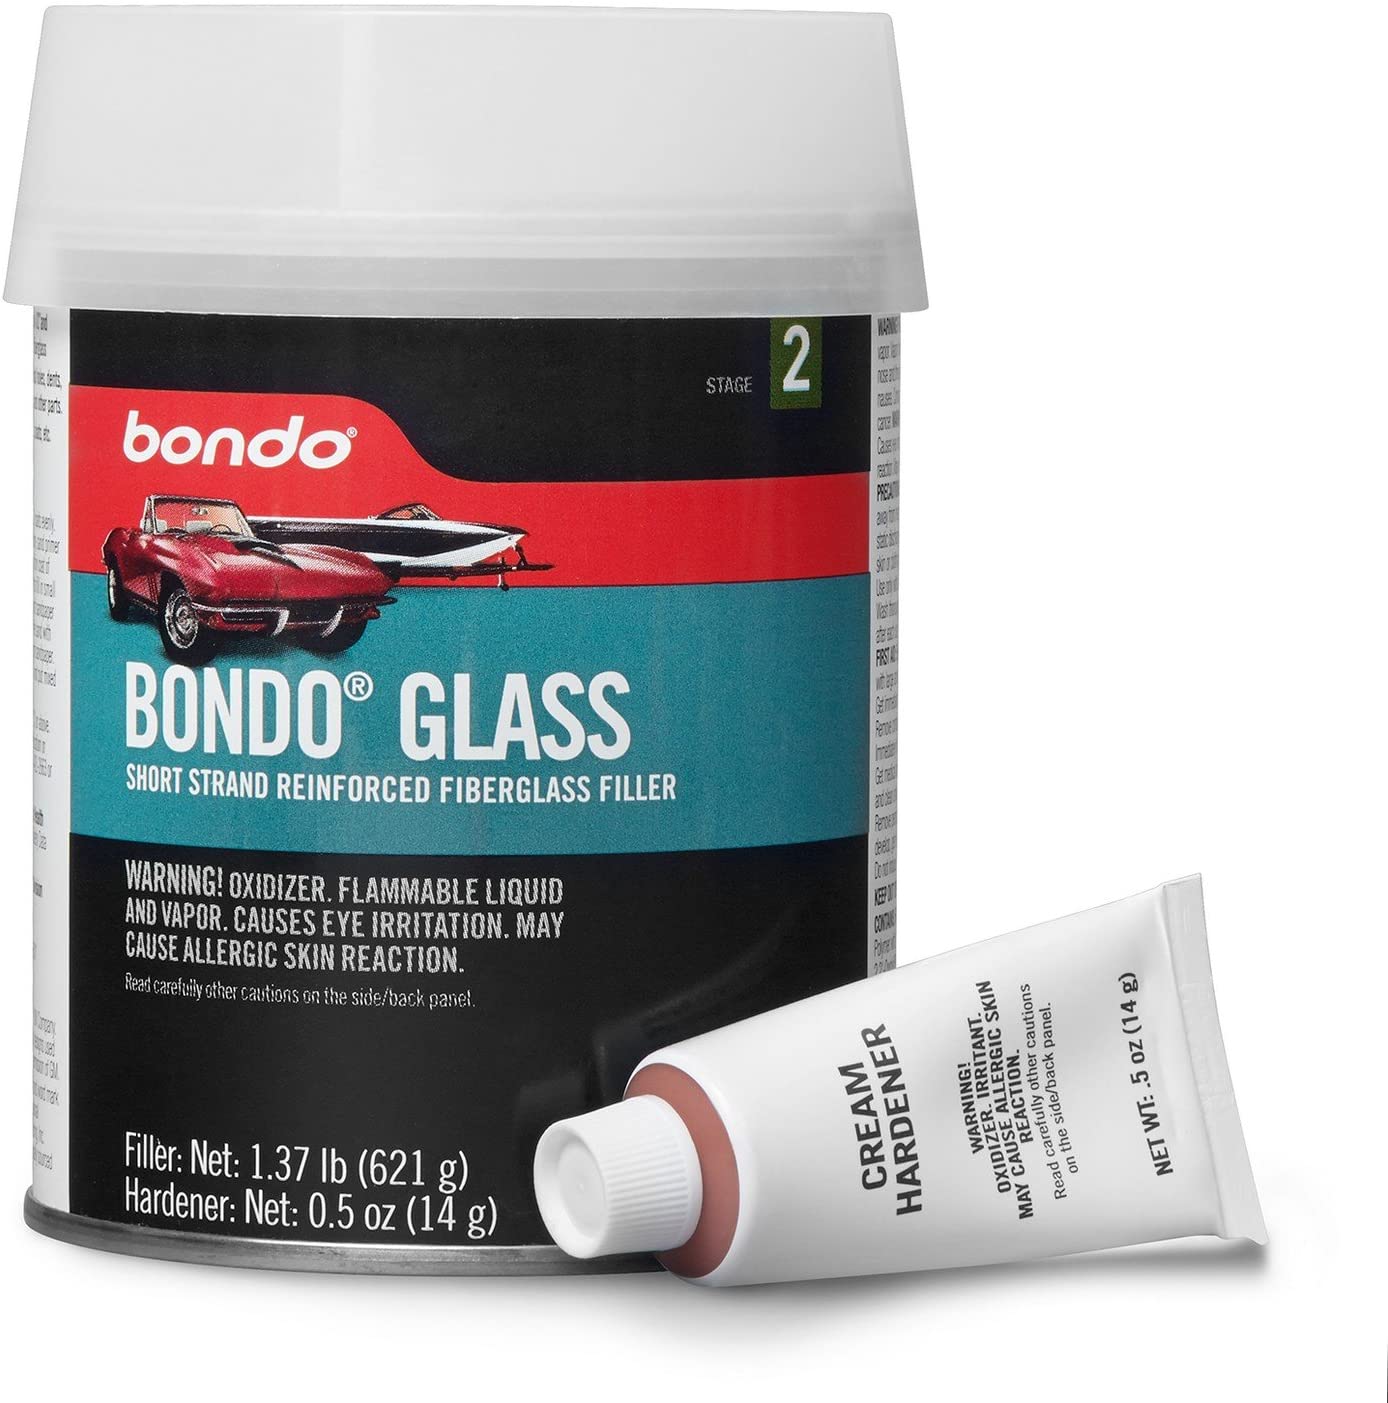 Bondo Glass, Short Strand Reinforced Fiberglass Filler, Stage 2, 1.37 lbs. Filler with 0.5 oz Hardener